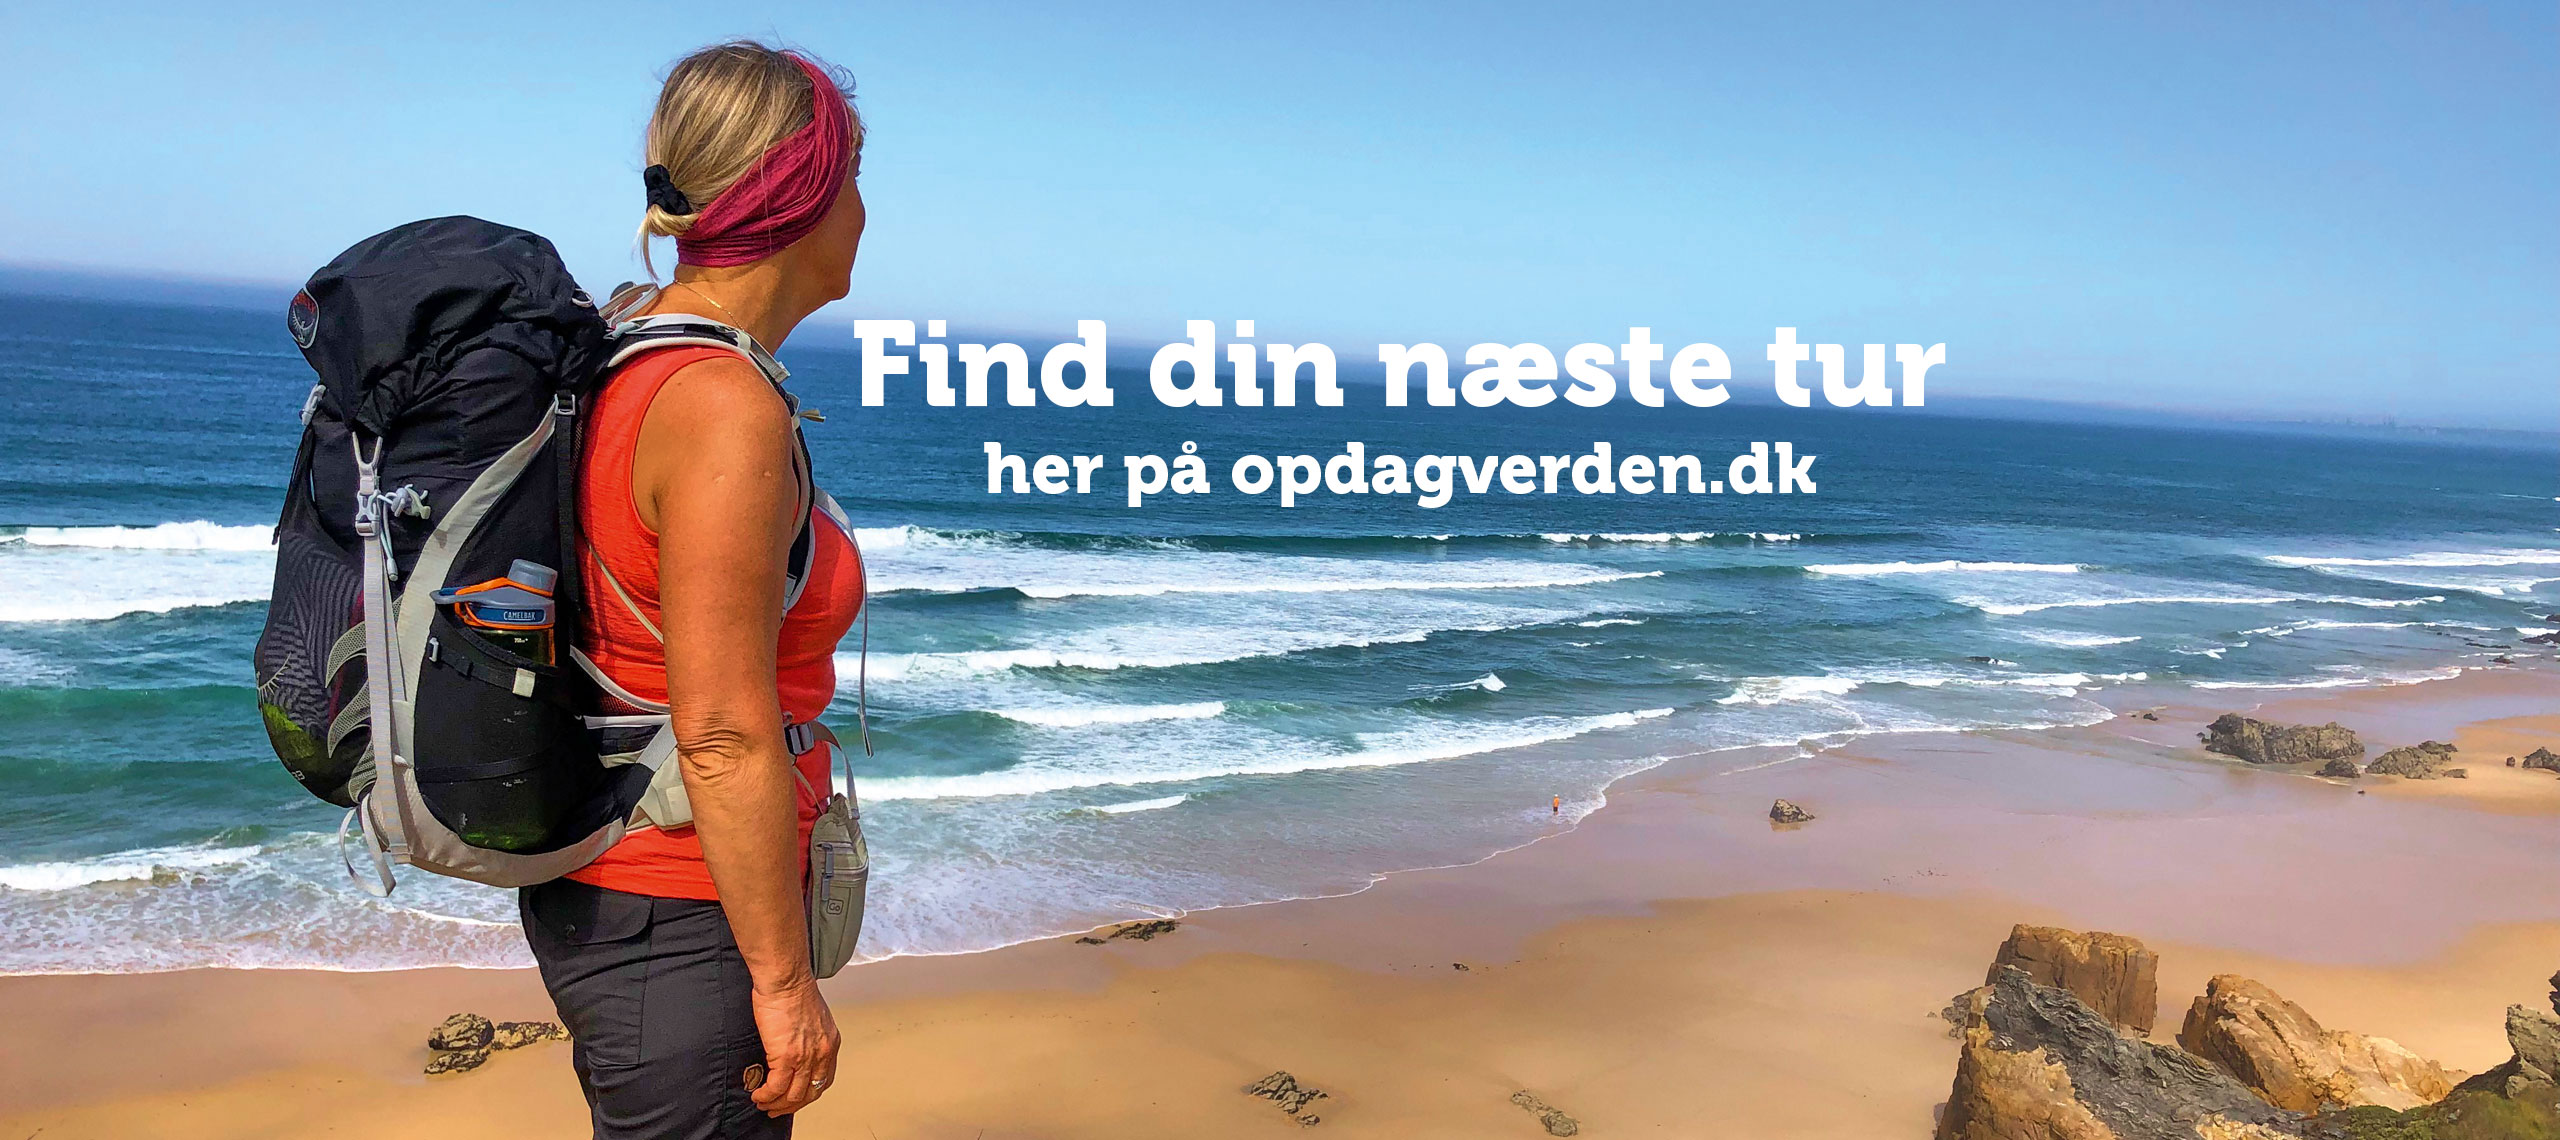 Opdag Verden - Find din næste tur på opdagverden.dk